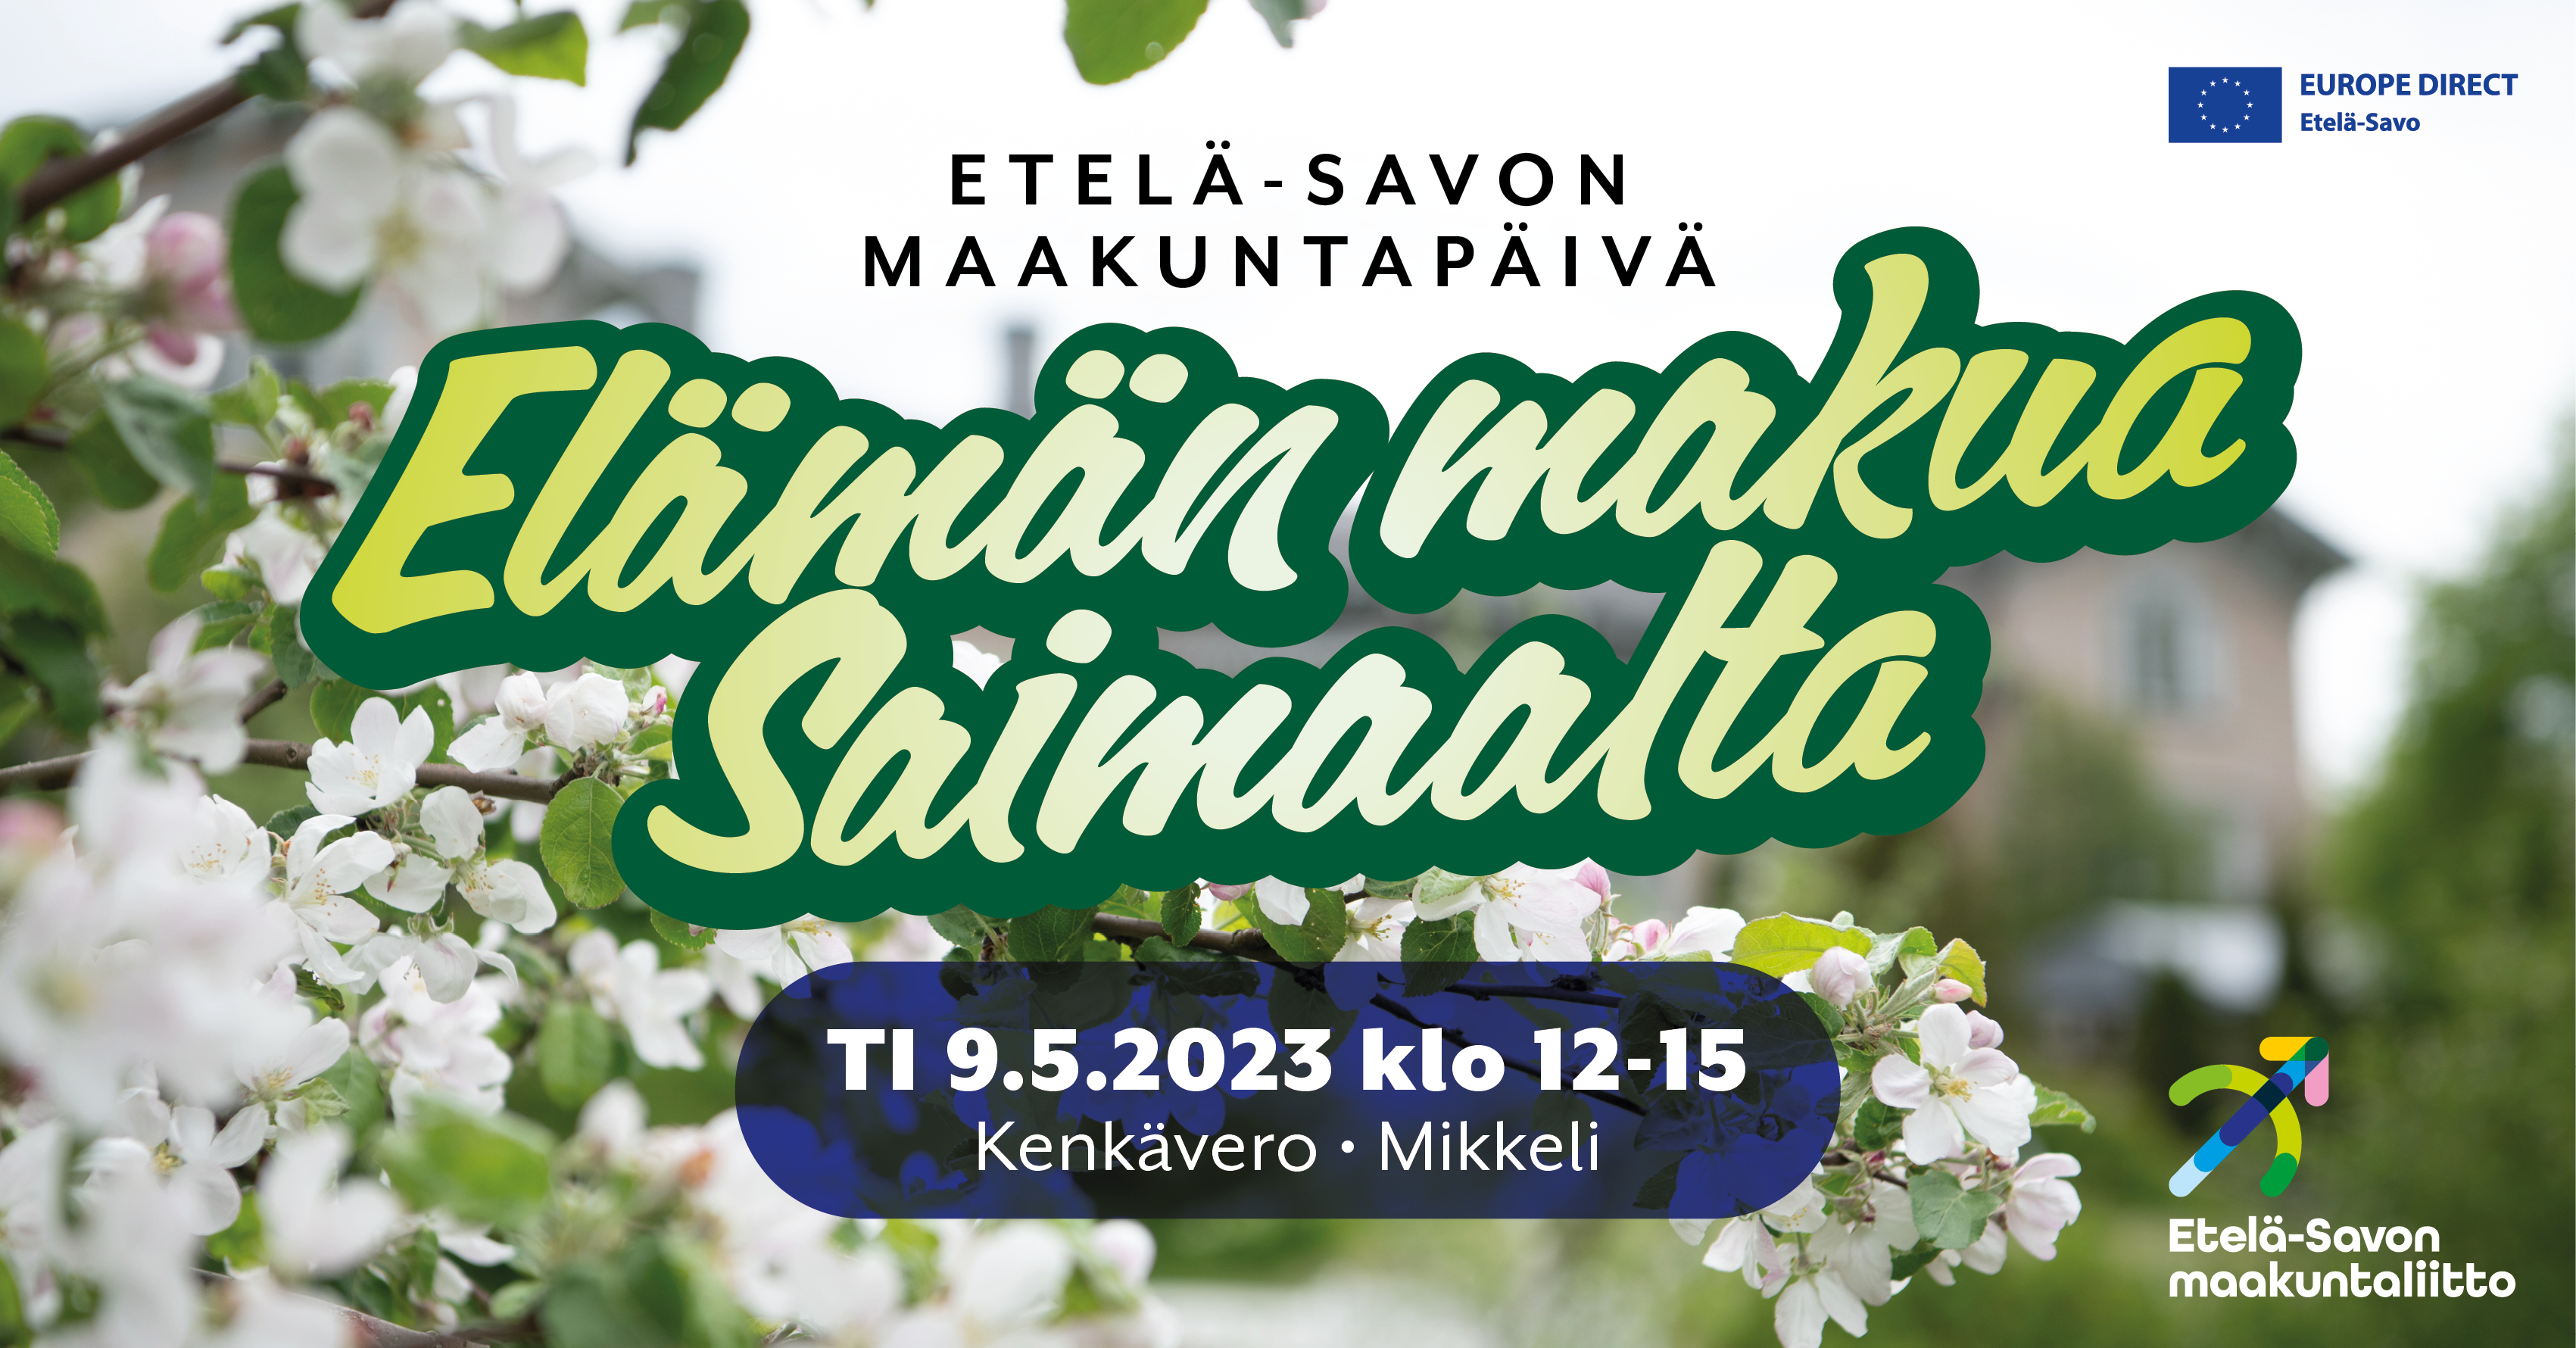 Elämän makua Saimaalta: Etelä-Savon maakuntapäivää vietetään 9.5. 